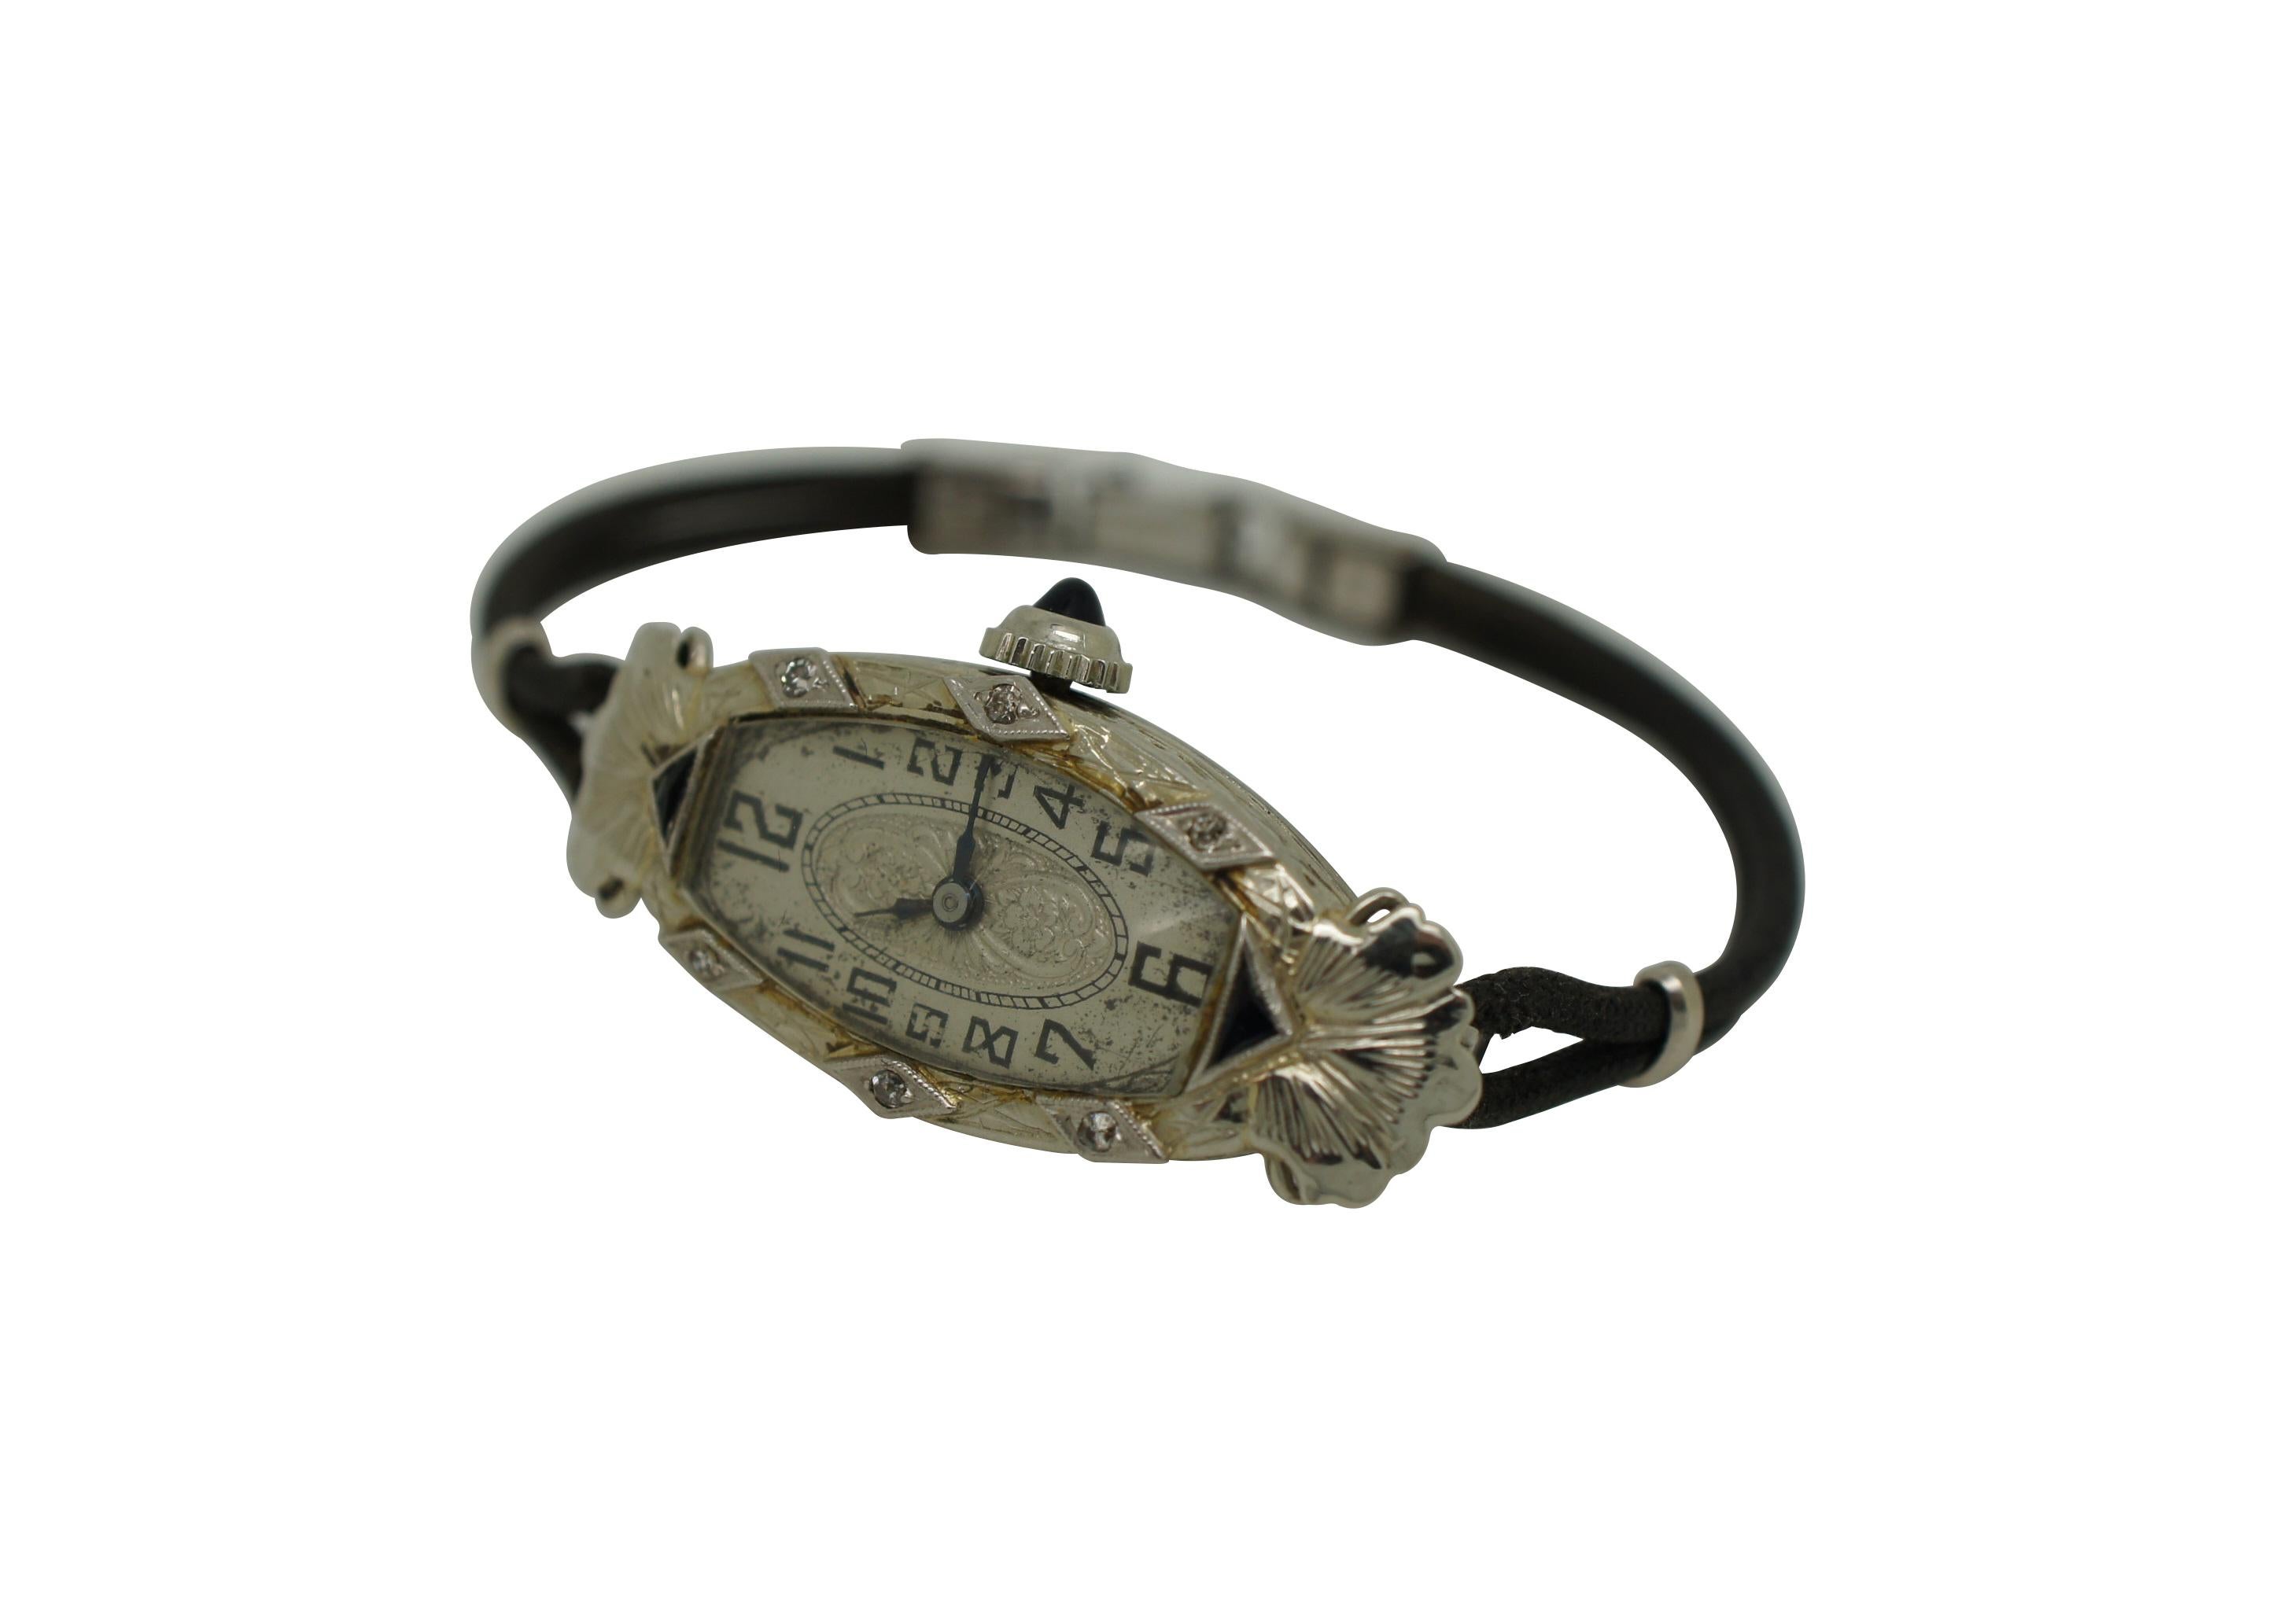 CIRCA 1920 Damen-Armbanduhr im Art-déco-Stil von Hayne Watch Company, 17 Juwelen, Schweizer Werk. Platinbesatz / Gehäuse aus 18 Karat Weißgold. Ovale, quadratische Form mit aufwändigem Art-déco-Stil - geätzter Rahmen, der mit Rauten akzentuiert und